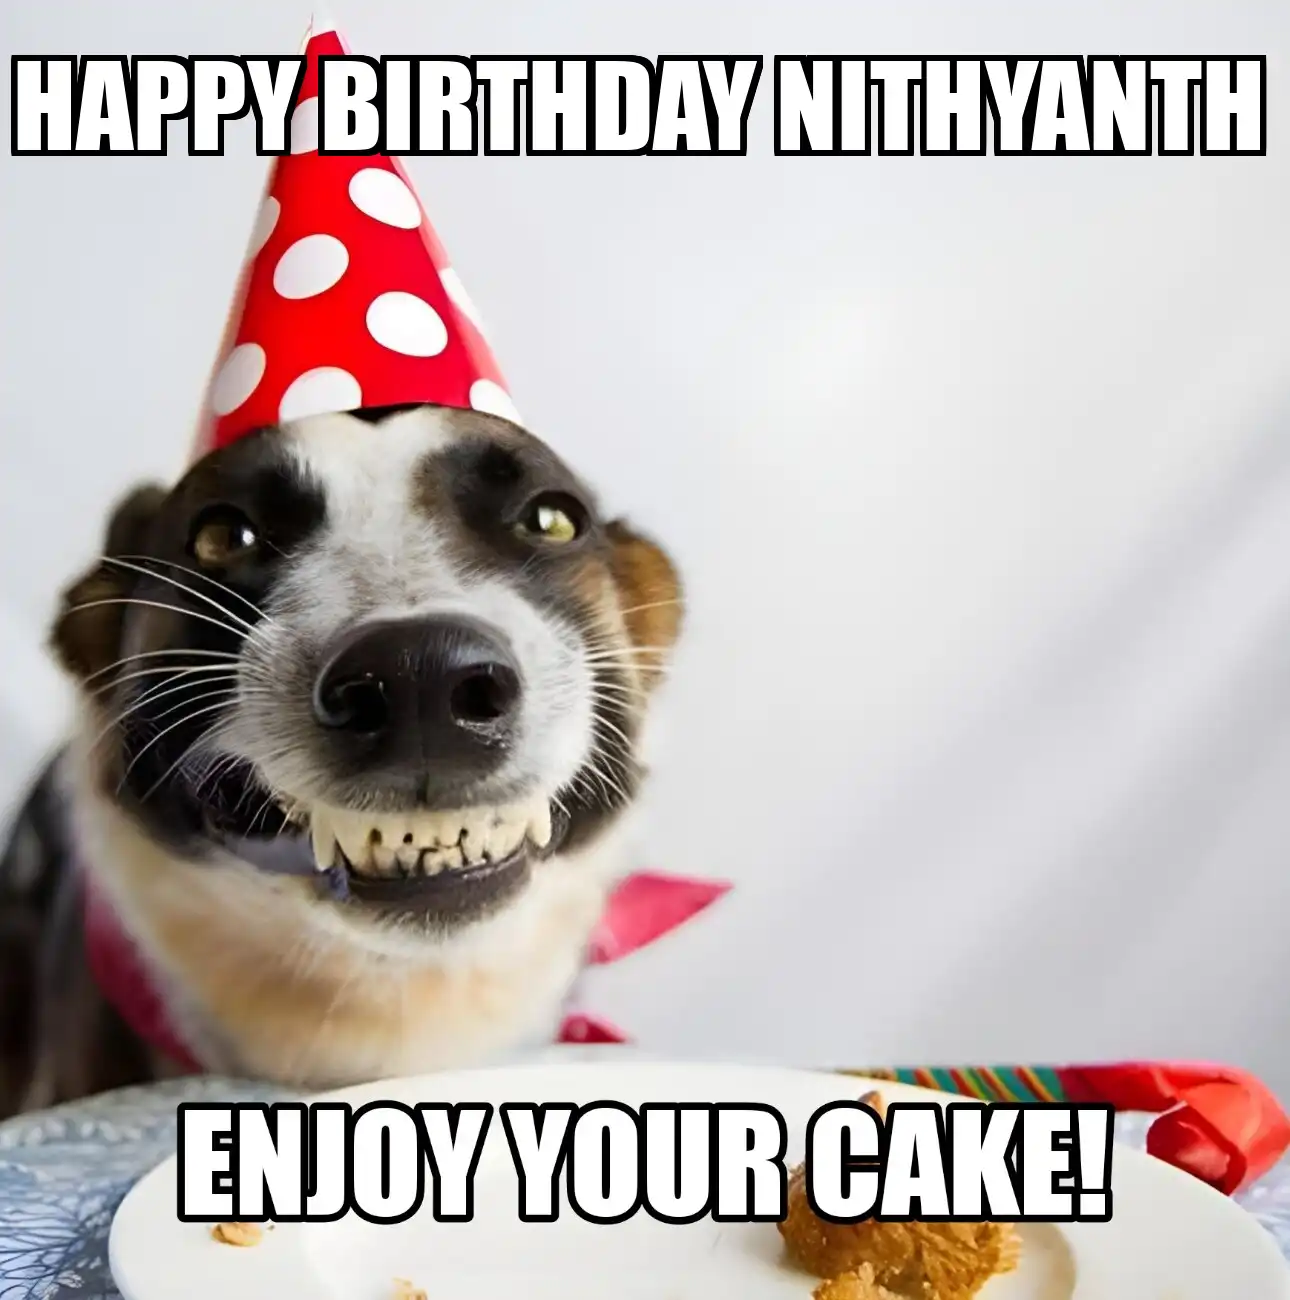 Happy Birthday Nithyanth Enjoy Your Cake Dog Meme